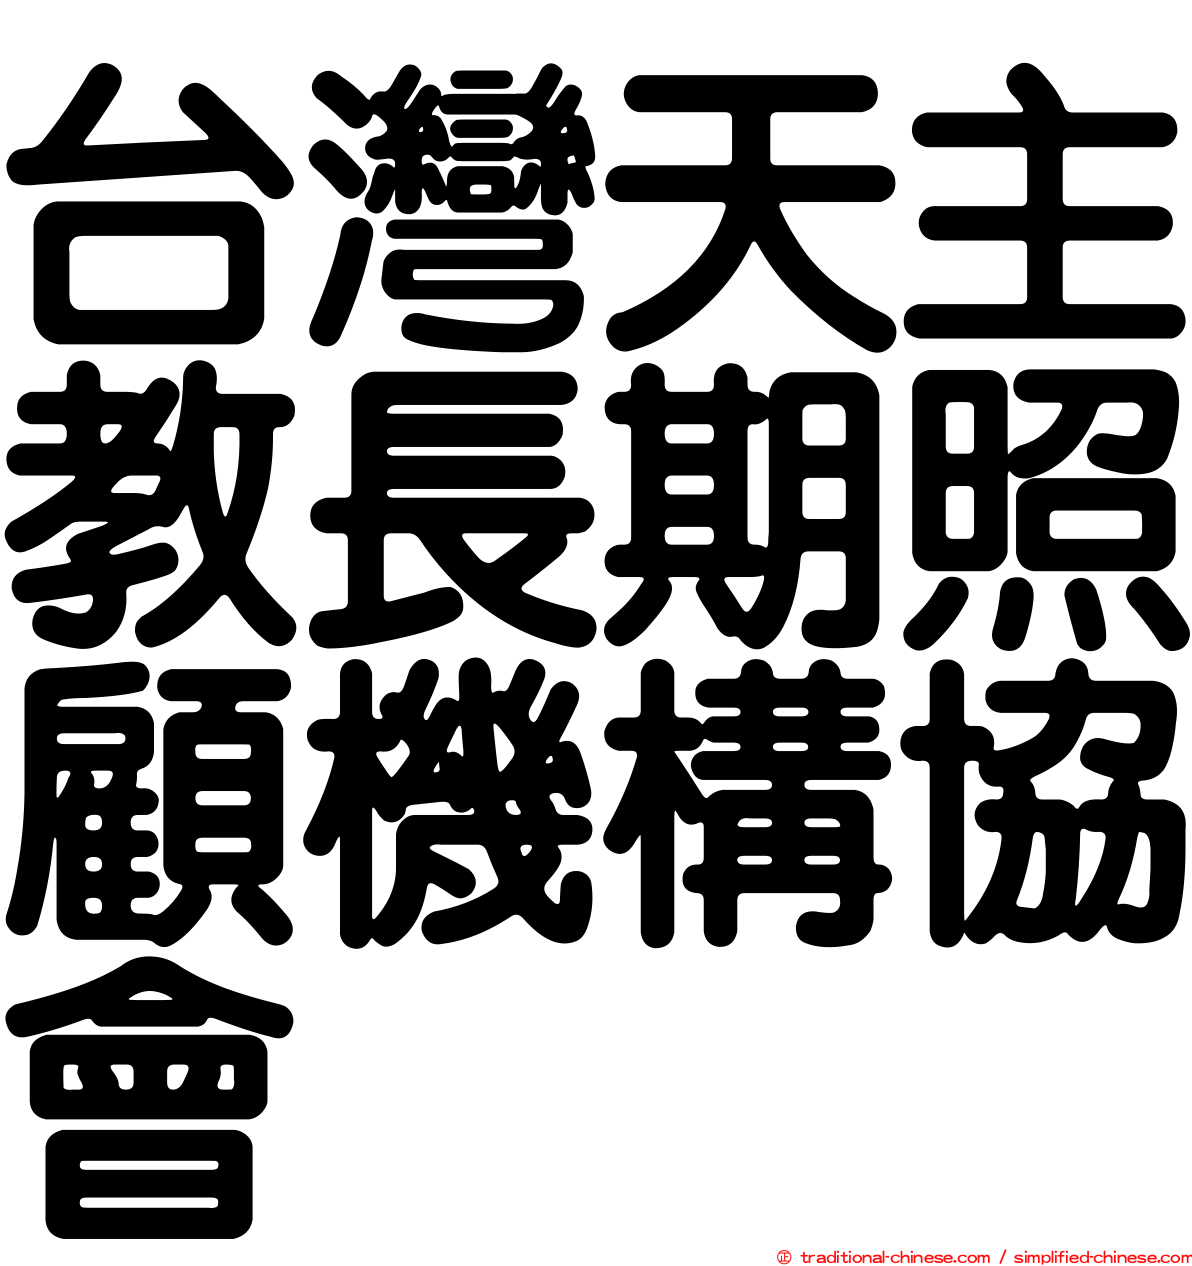 台灣天主教長期照顧機構協會